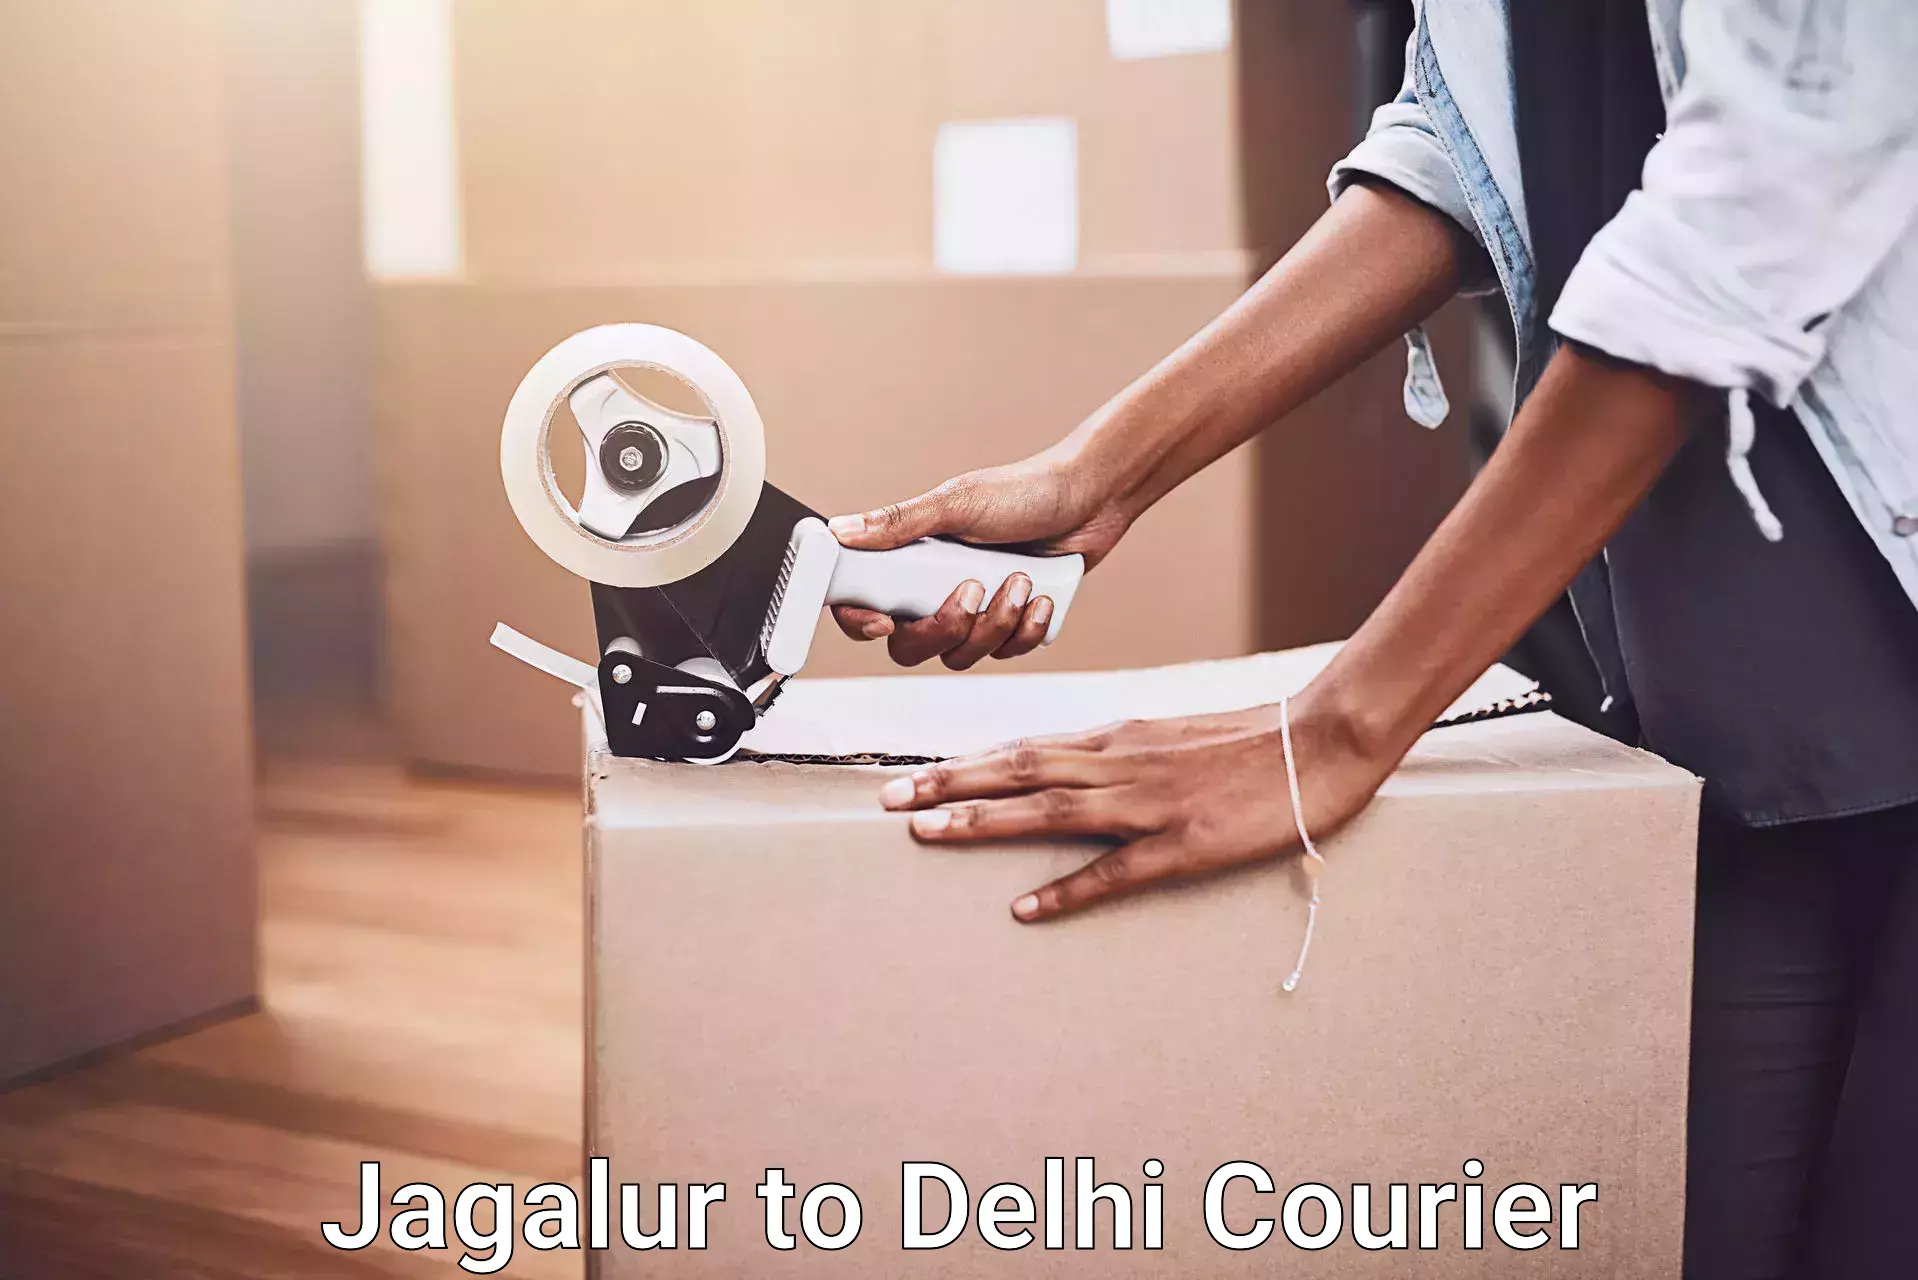 Furniture logistics Jagalur to Delhi